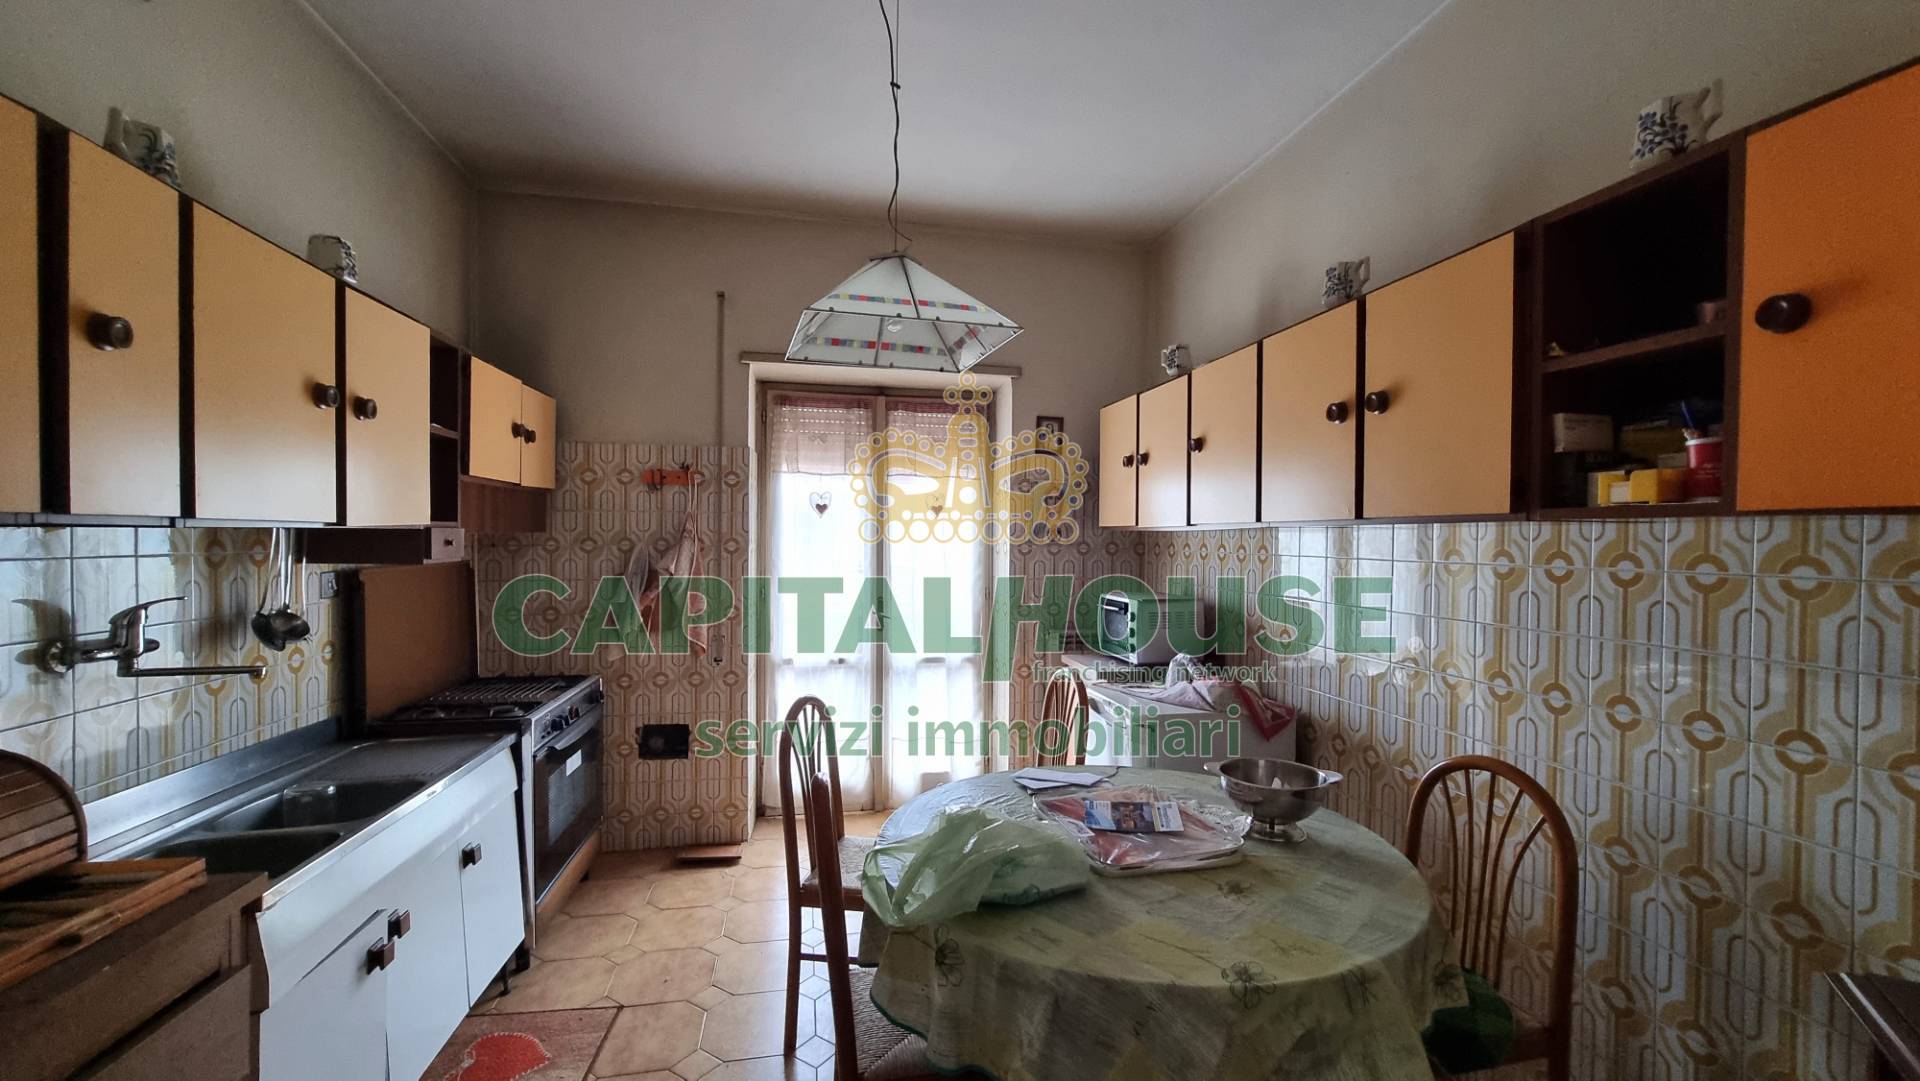 Appartamento in vendita a Casagiove, 5 locali, prezzo € 160.000 | PortaleAgenzieImmobiliari.it